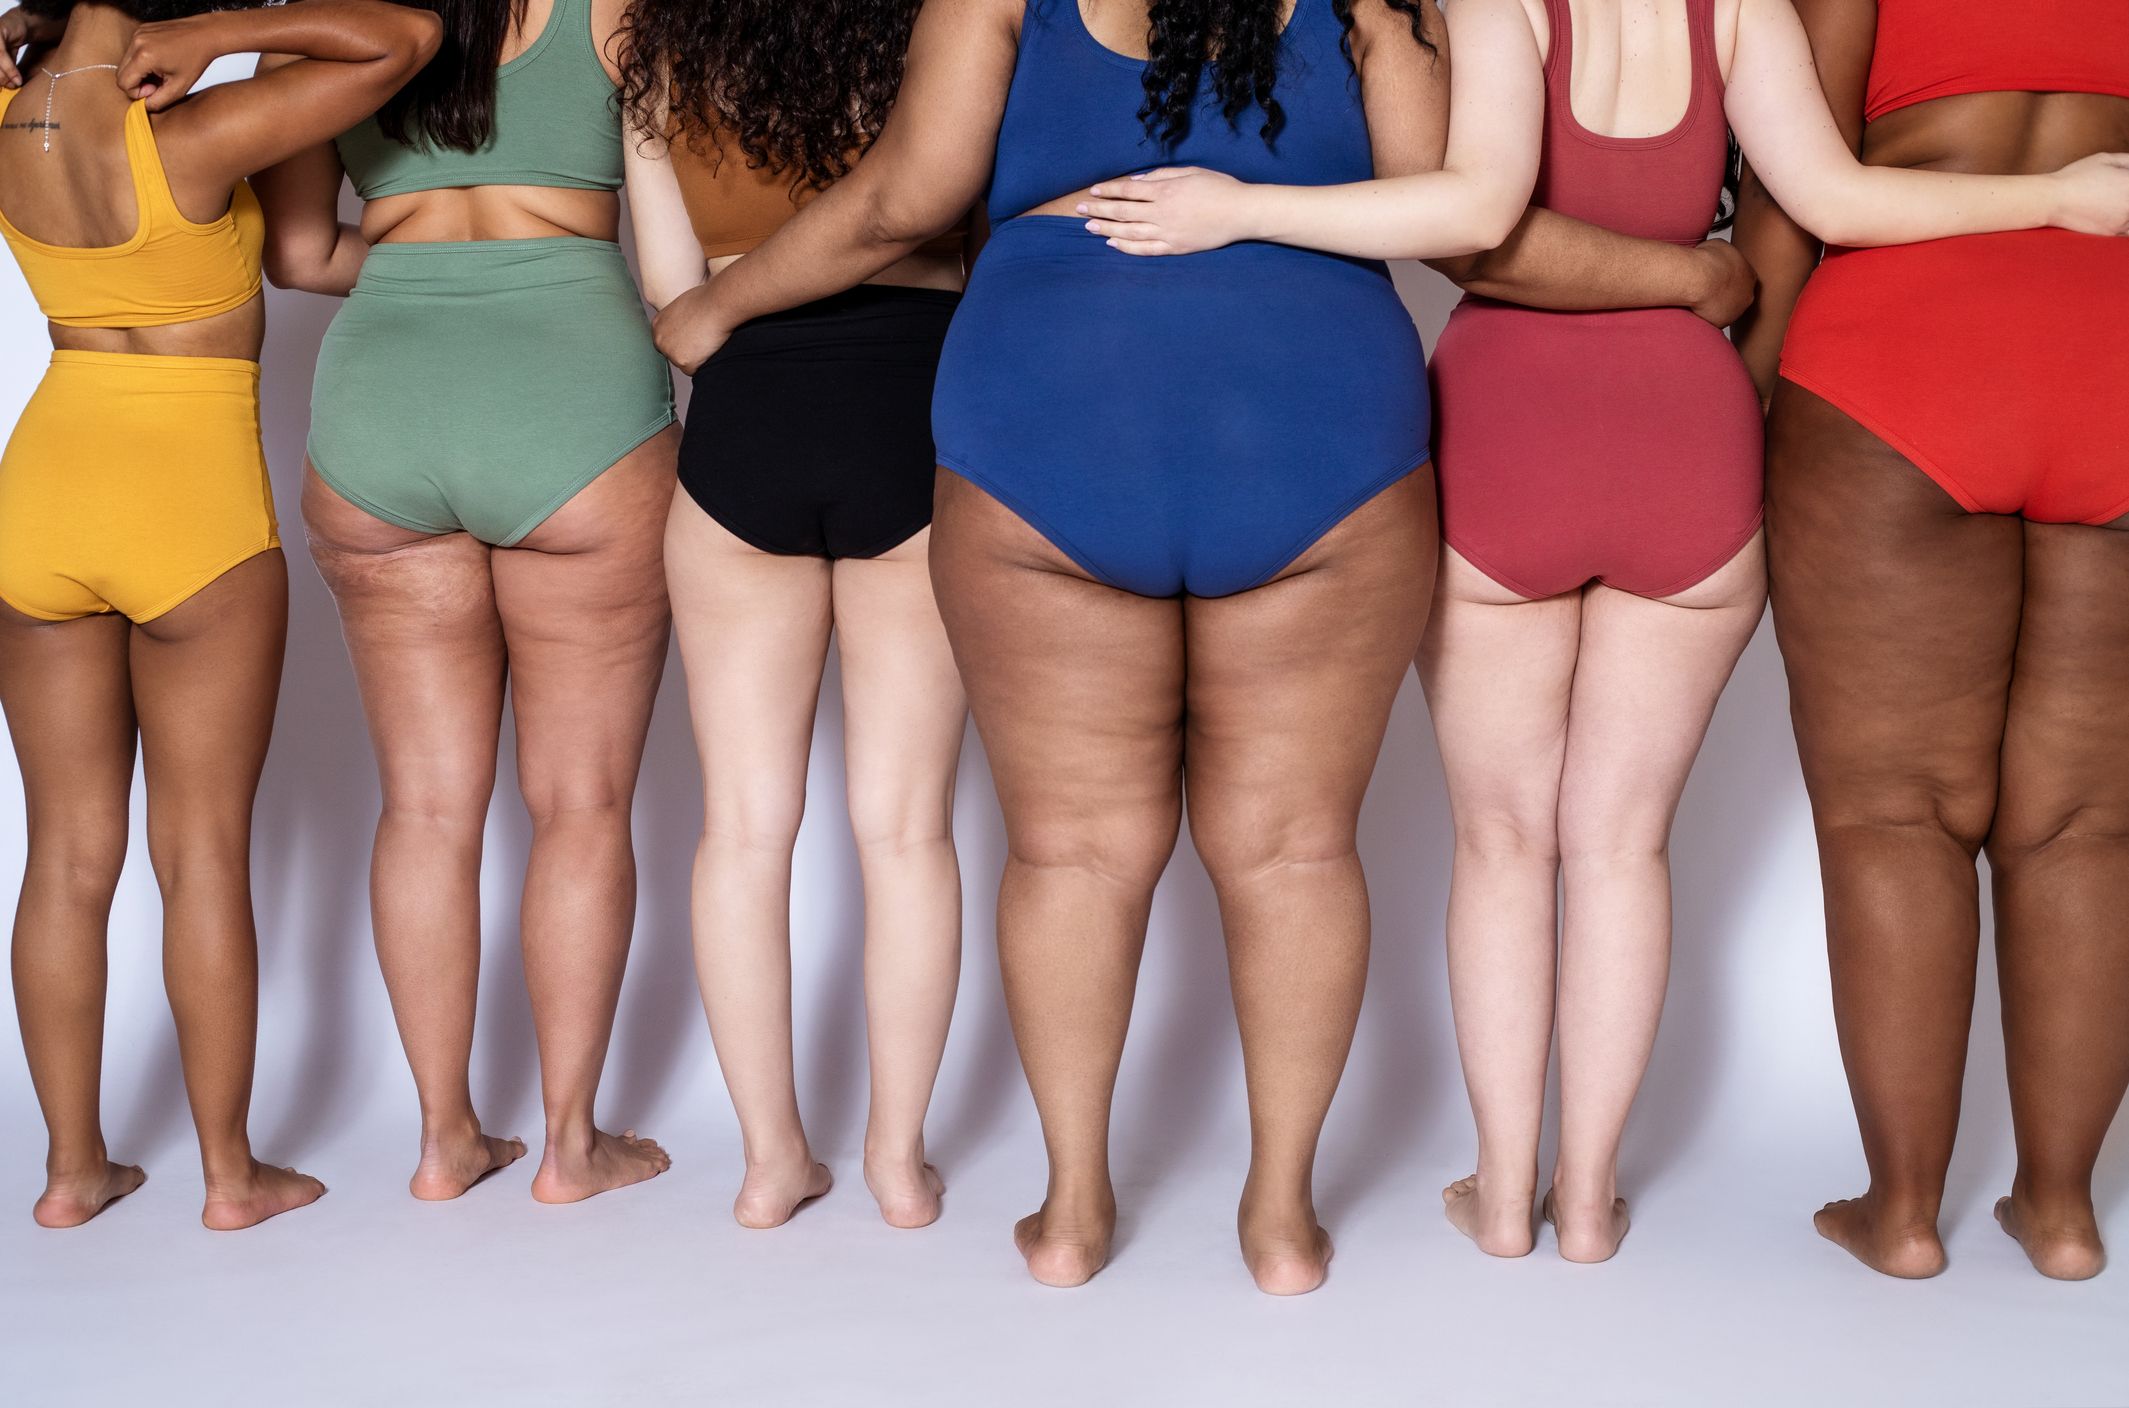 Elhízott ember fogyás - Gyűjtsön erőt!, Fogyókúrás tippek kórosan elhízottak